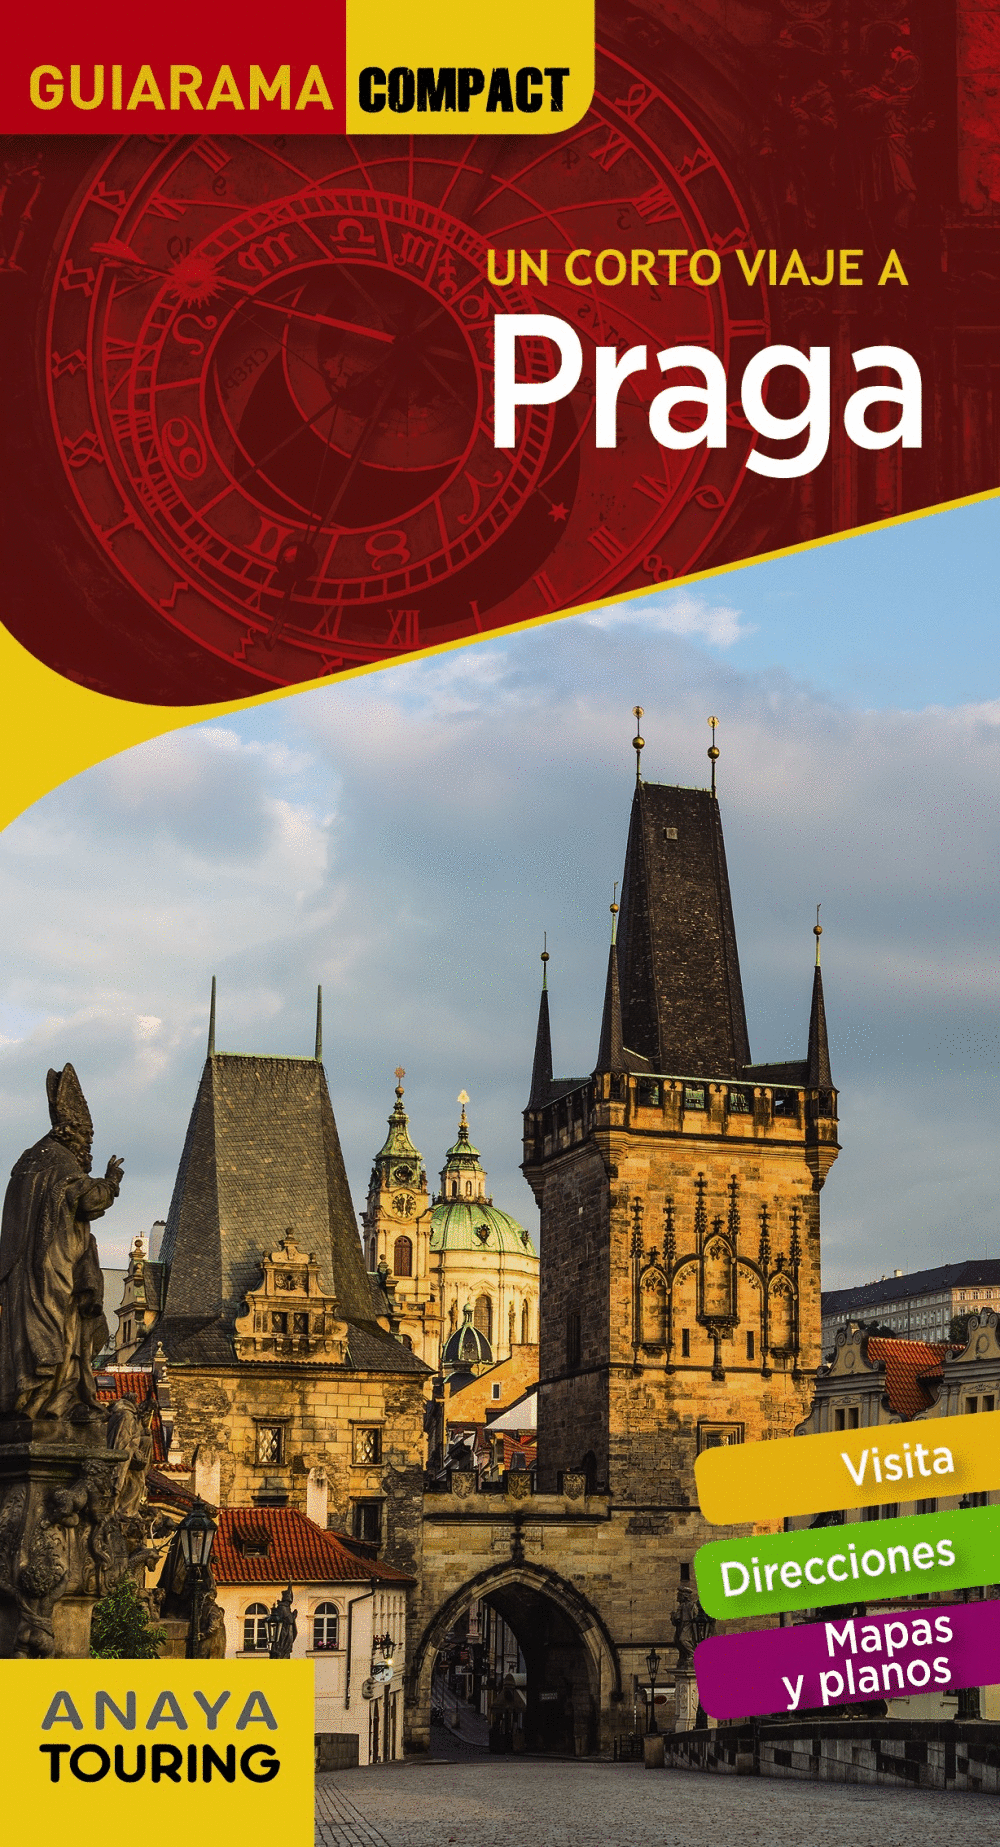 PRAGA 2019